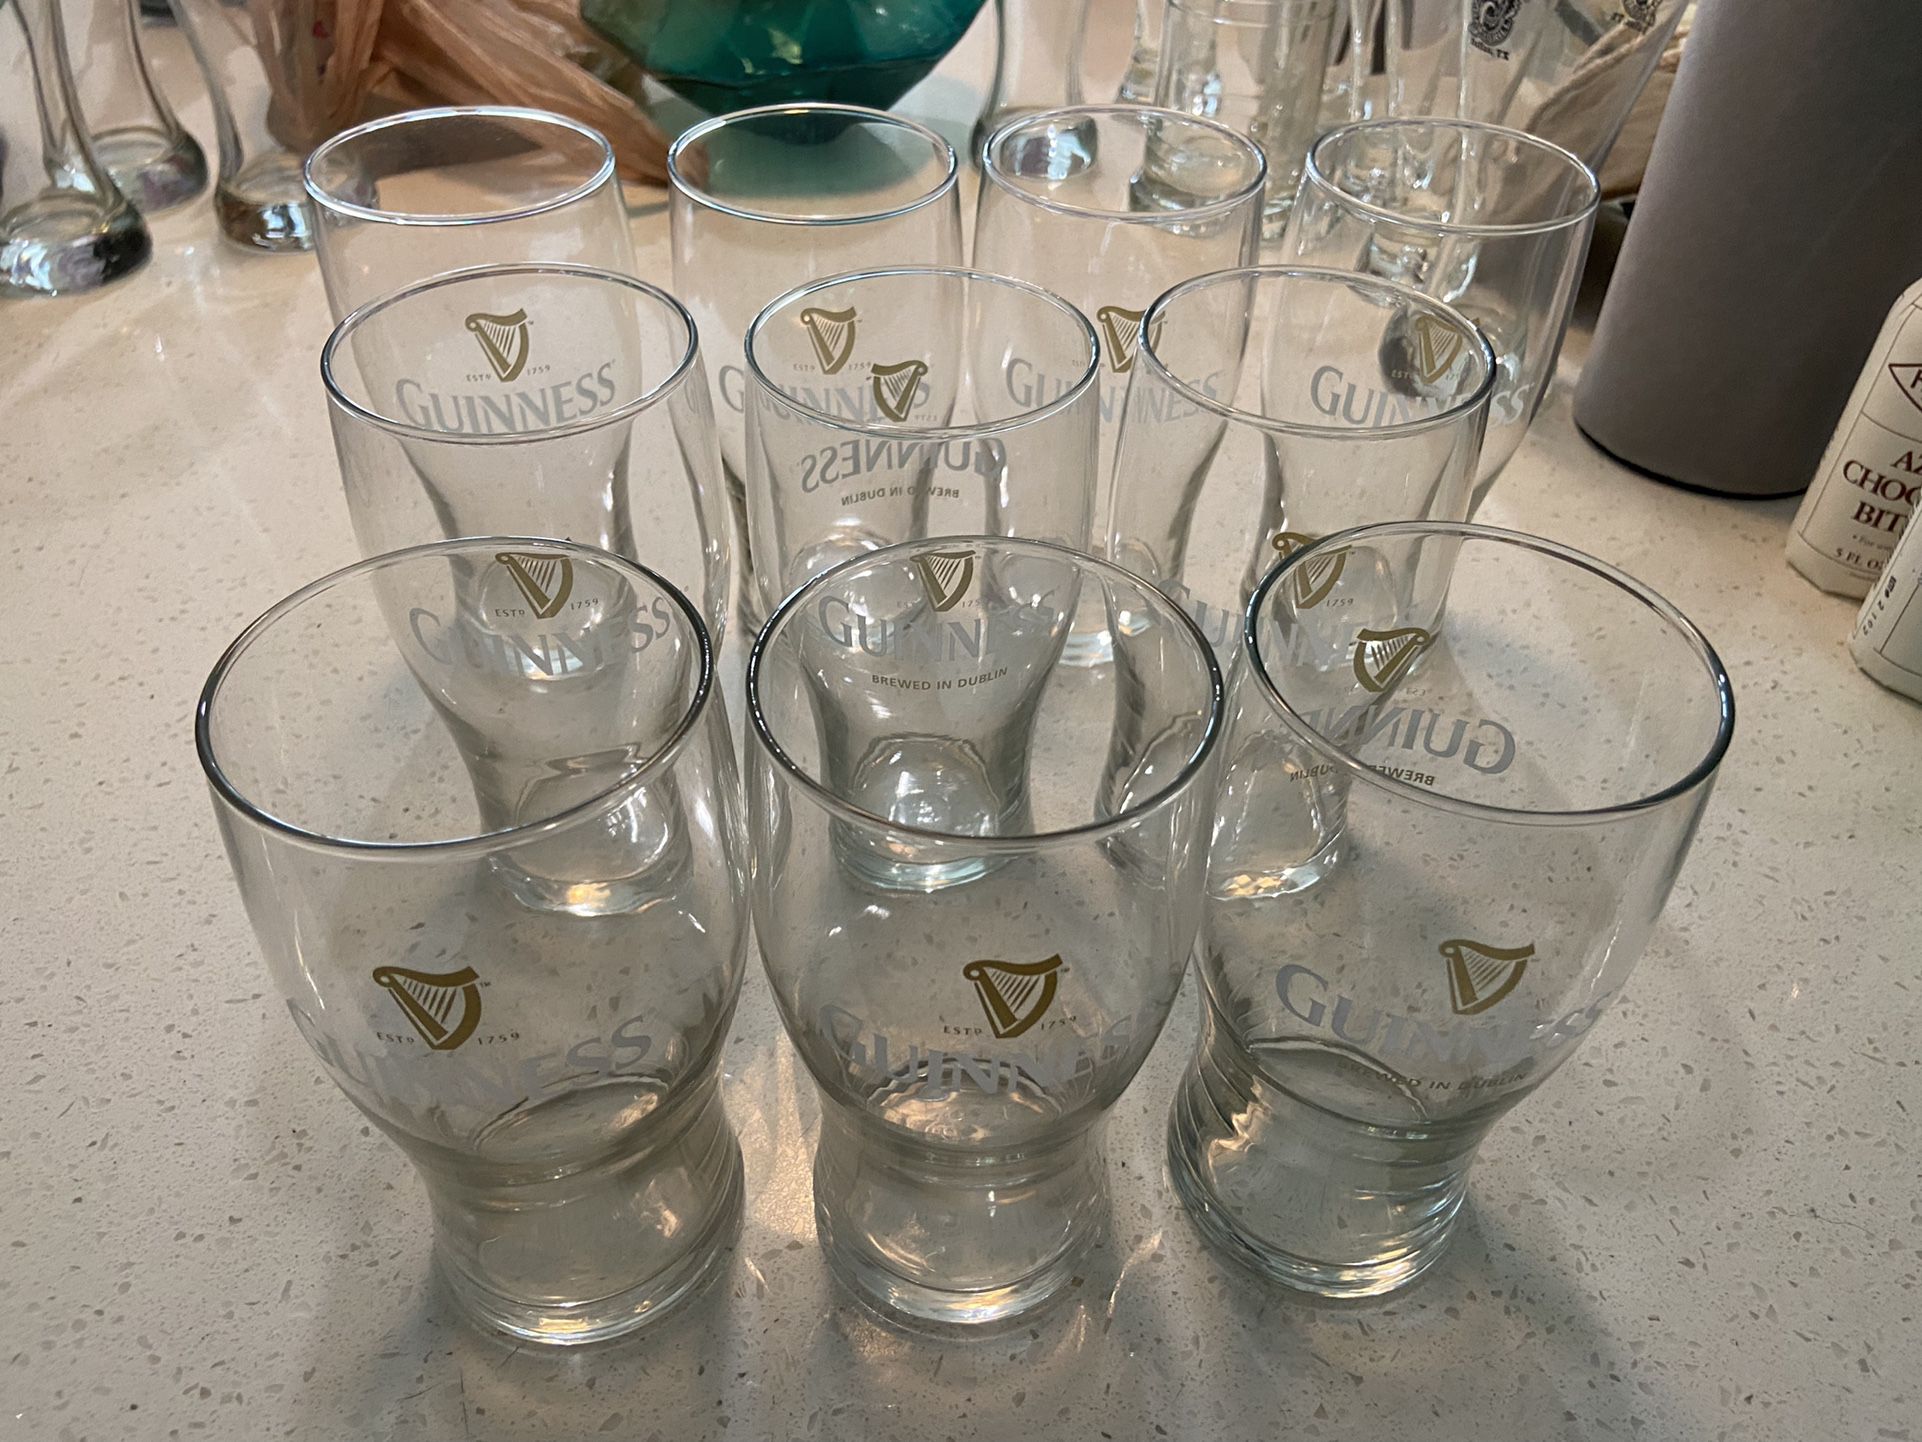 Guinness beer glasses - set of 10